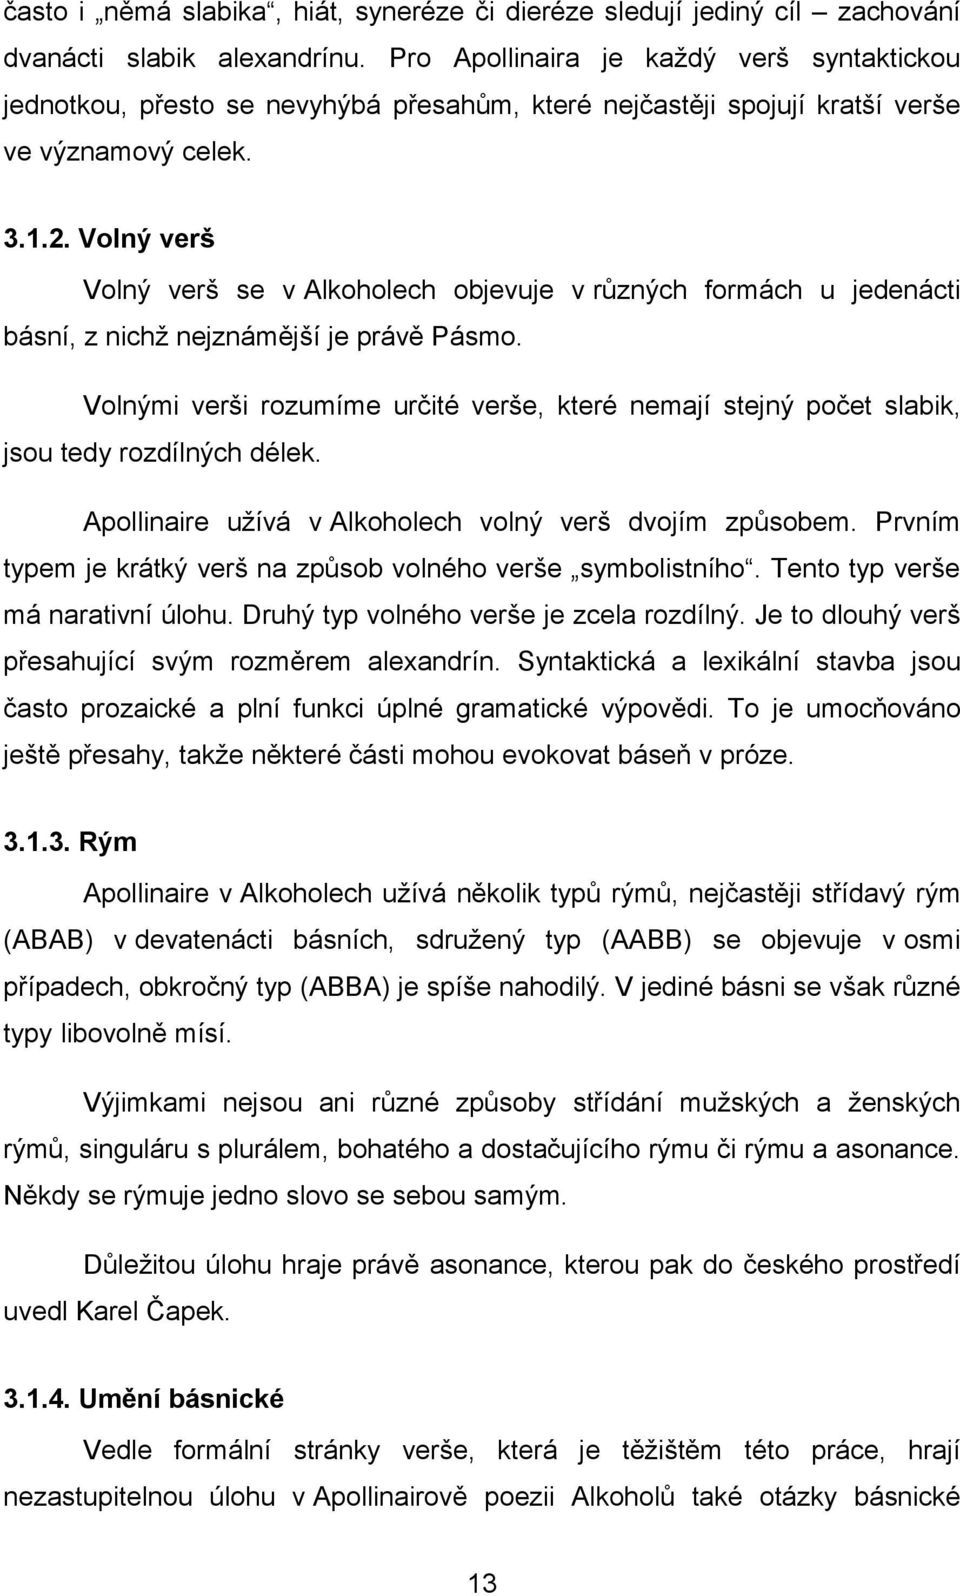 Stylistické hodnocení překladu. Guillaume Apollinaire: Pásmo, Zvony - PDF  Free Download